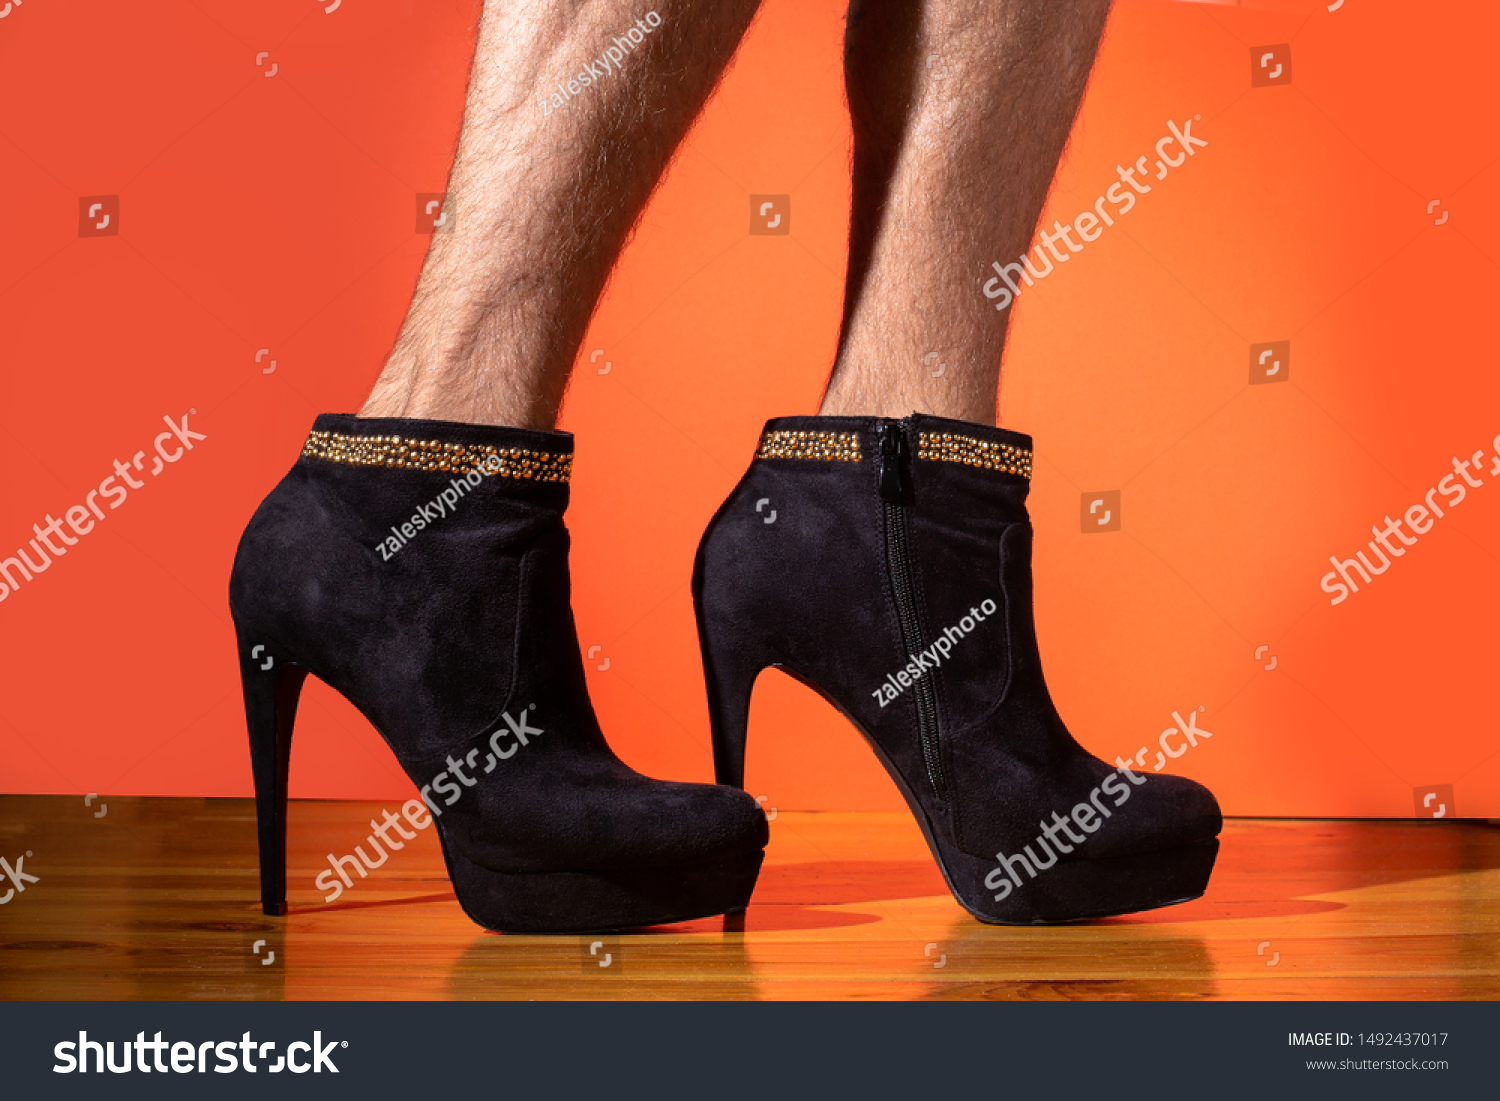 heels on man